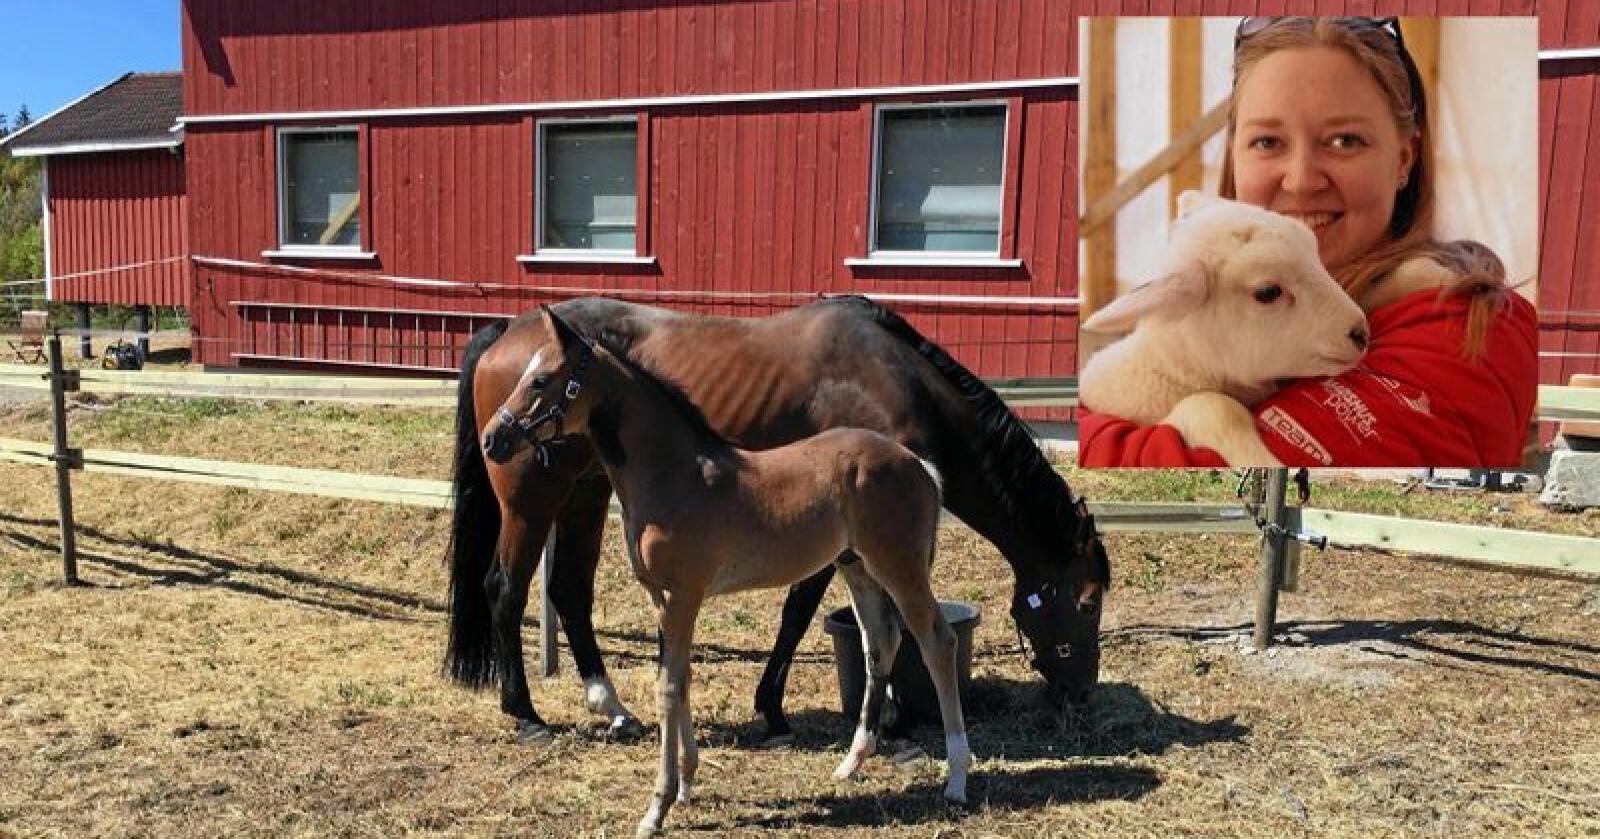 Hesten til Mailin Christina Wahl Engeskaug ble påvist positvt tilfelle av salmonella. Hun reagerer på hvordan Veterinærhøgskolen har håndtert situasjonen. Foto: Privat